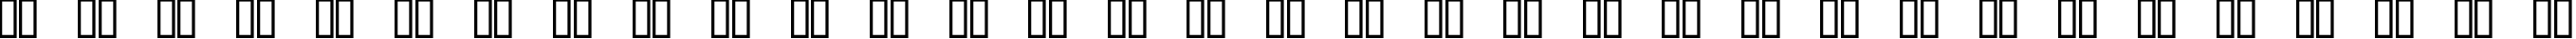 Пример написания русского алфавита шрифтом CourierPS Bold Oblique